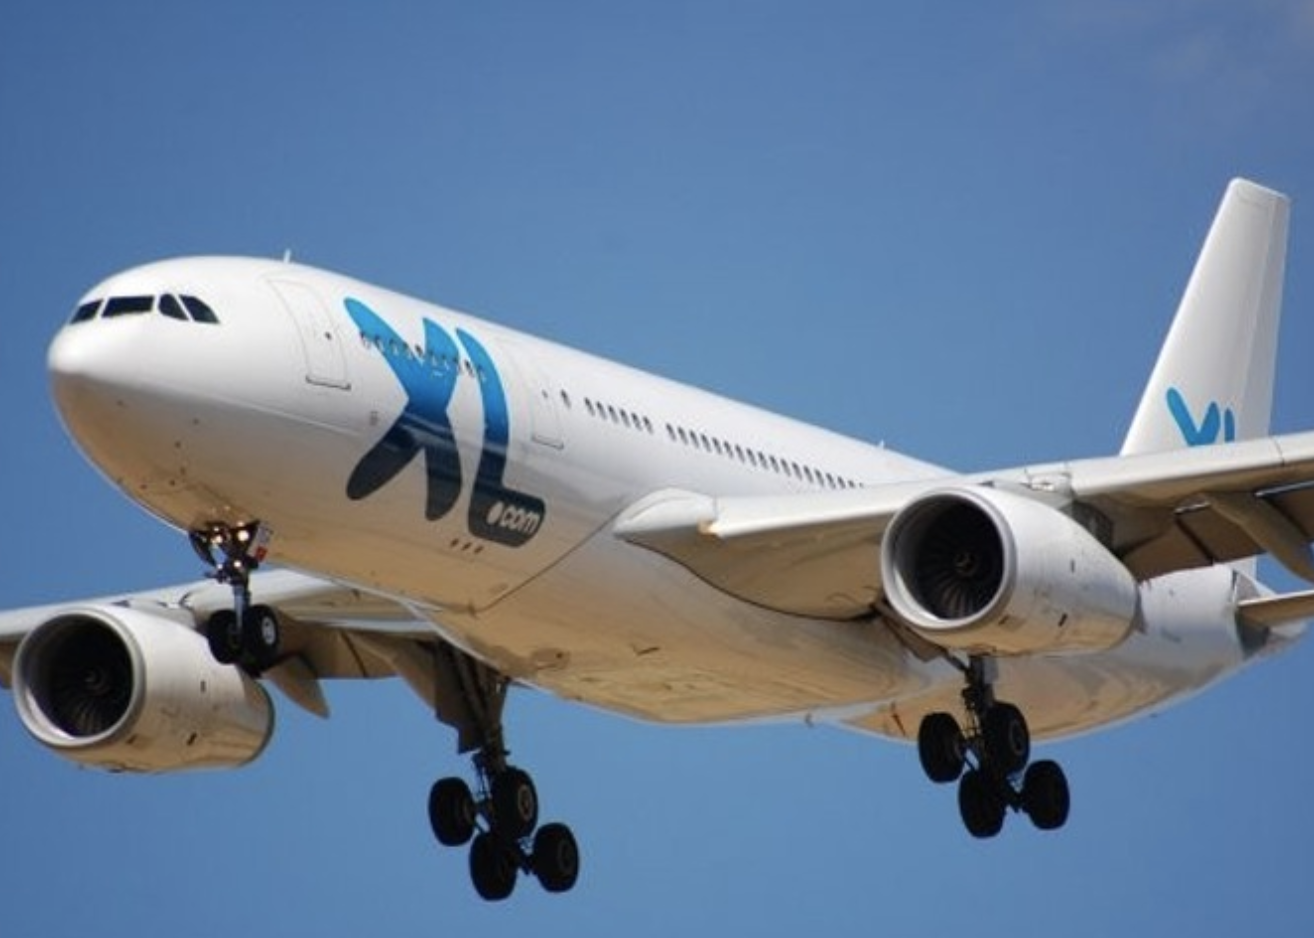 La compagnie XL Airways arrête ses ventes de billets